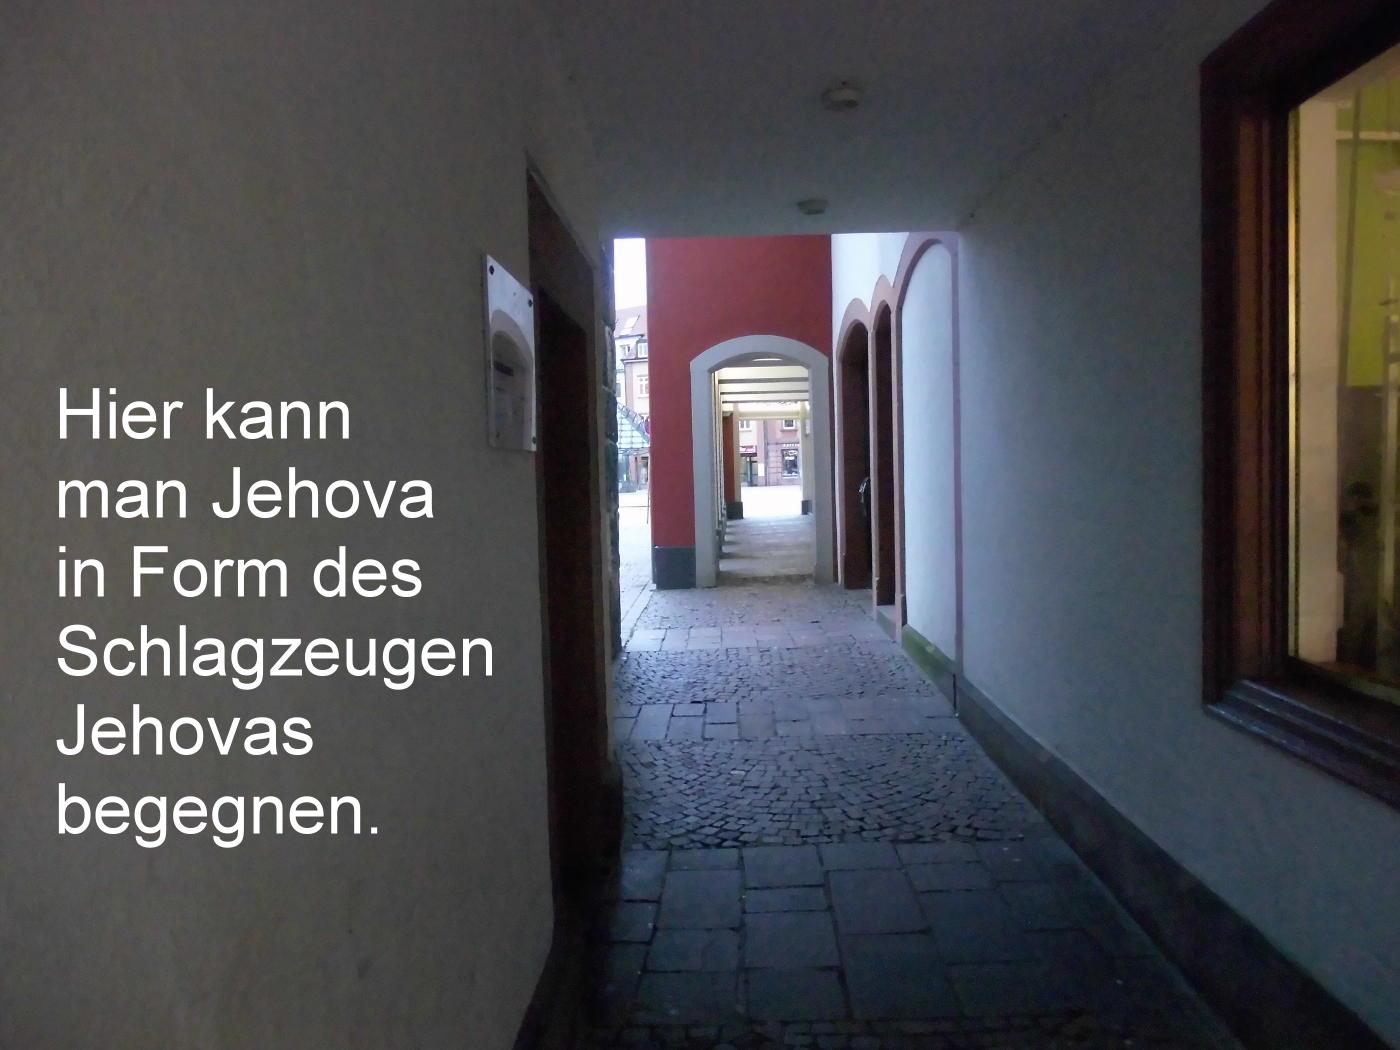 Jehovas Verblutungsmord auf leisen Sohlen – Deutschland ist Faschisten-Schutzgebiet